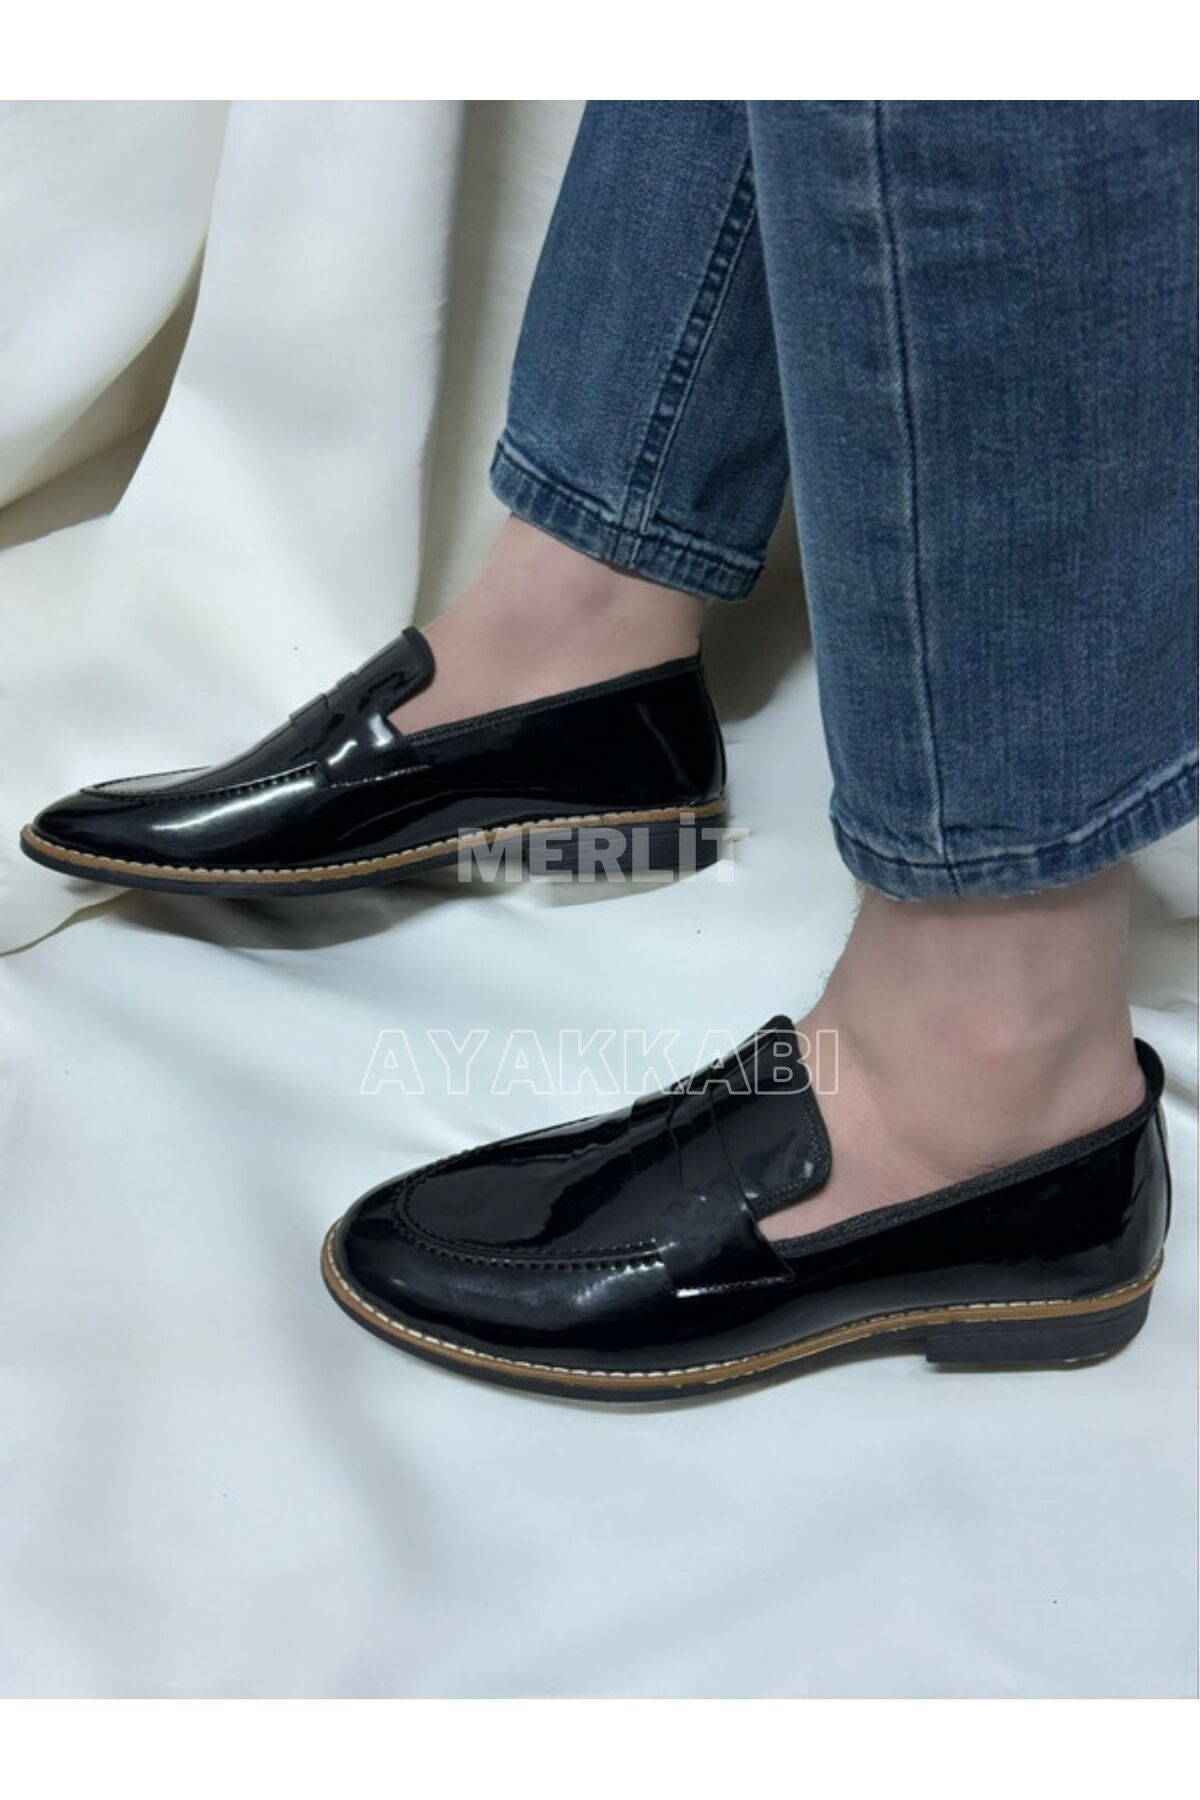 MerlitShoes Erkek Klasik Günlük Yumuşak Ayakkabı